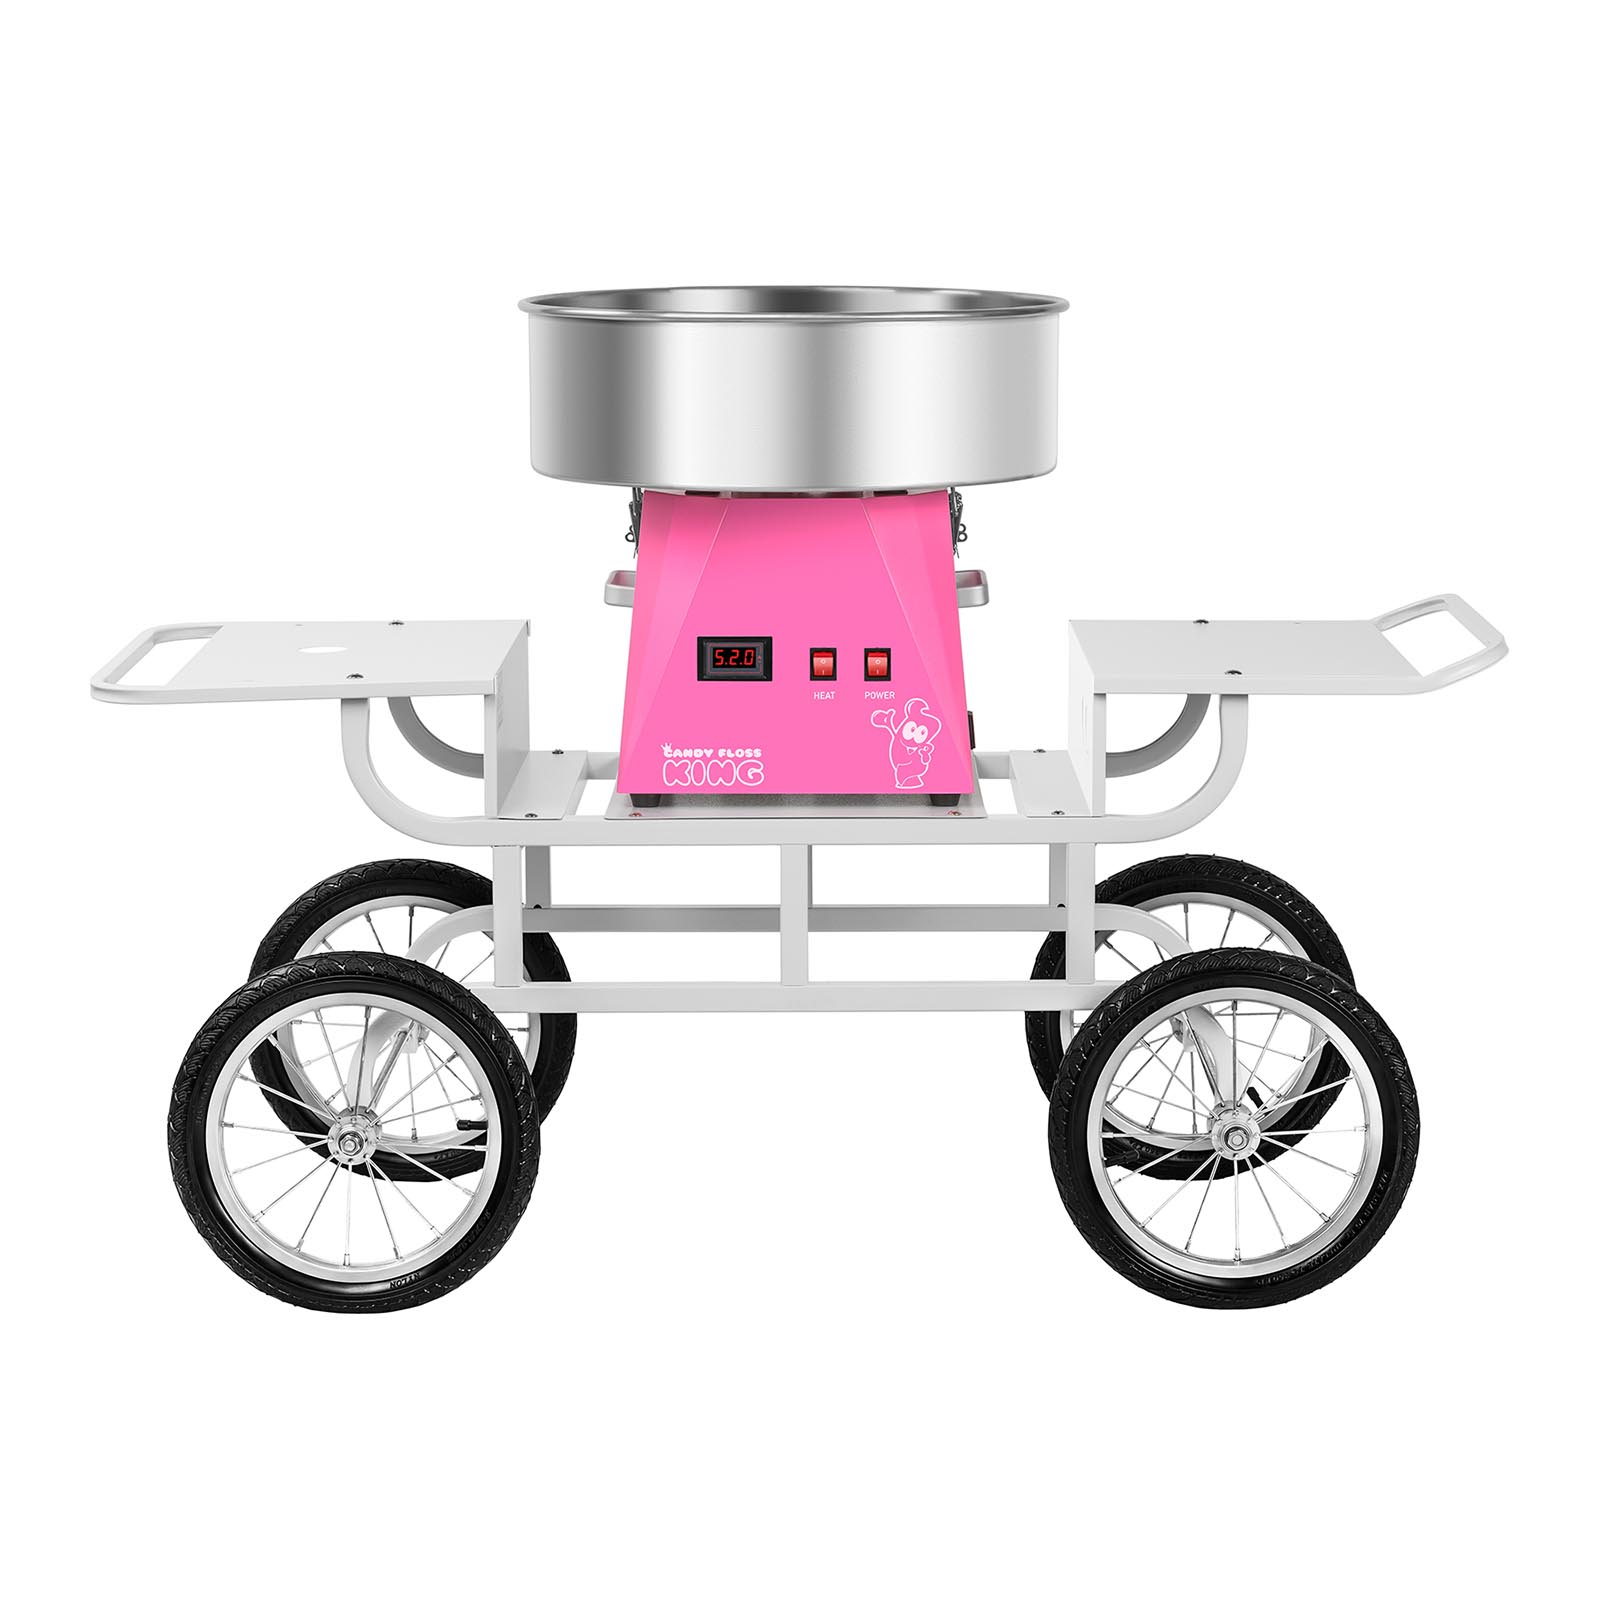 Zuckerwattemaschine Set mit Unterwagen - 52 cm - pink/weiß